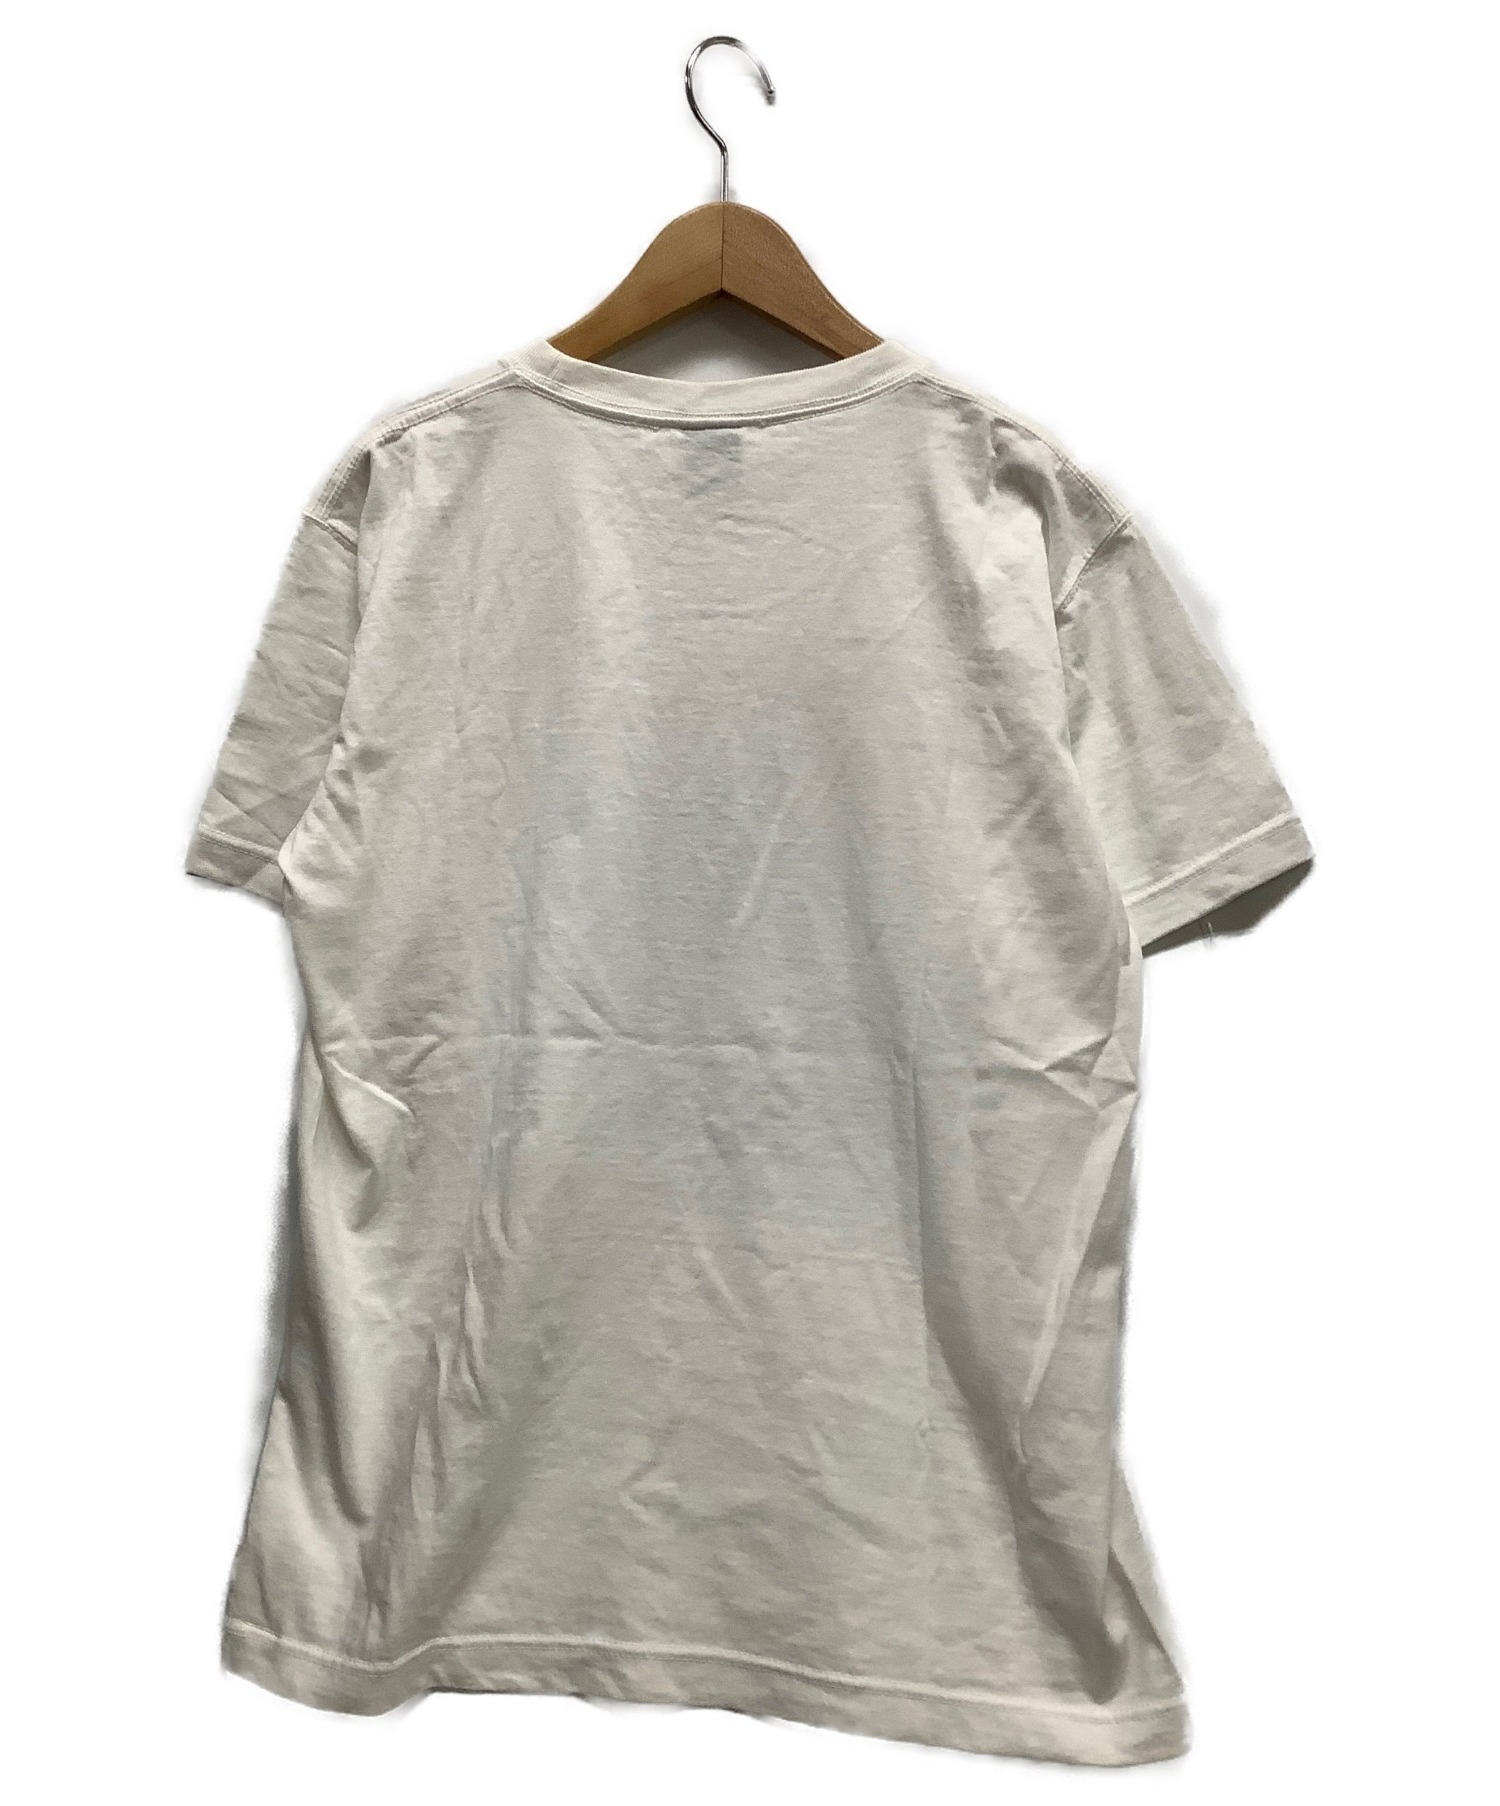 APPLEBUM×SLAM DUNK (アップルバム×スラムダンク) Tシャツ ホワイト サイズ:M